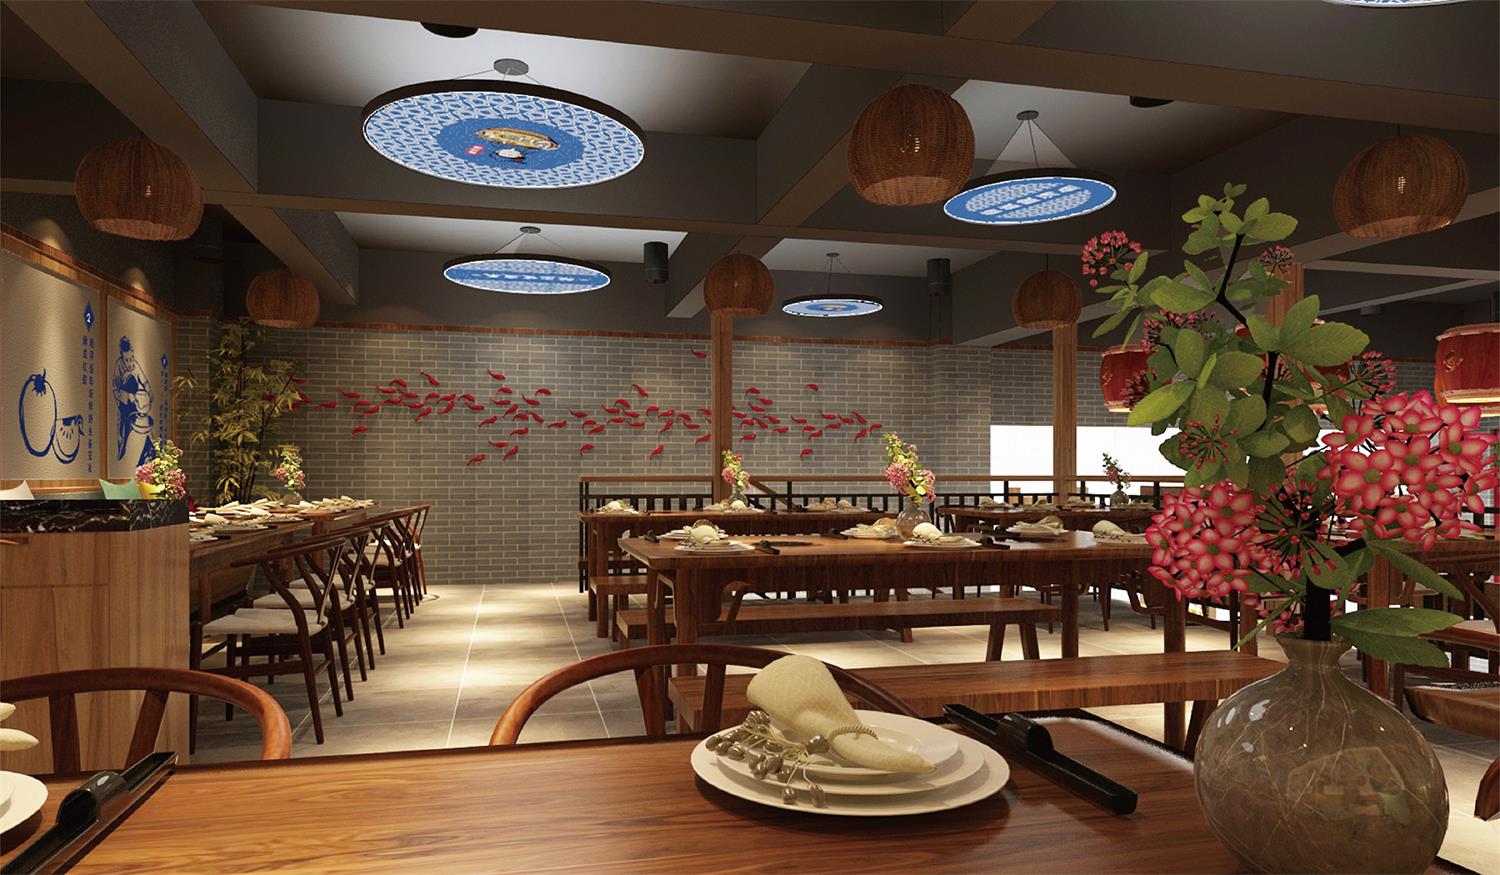 菜单规划如何让中餐厅的餐饮空间设计，蕴含中国传统文化底蕴？